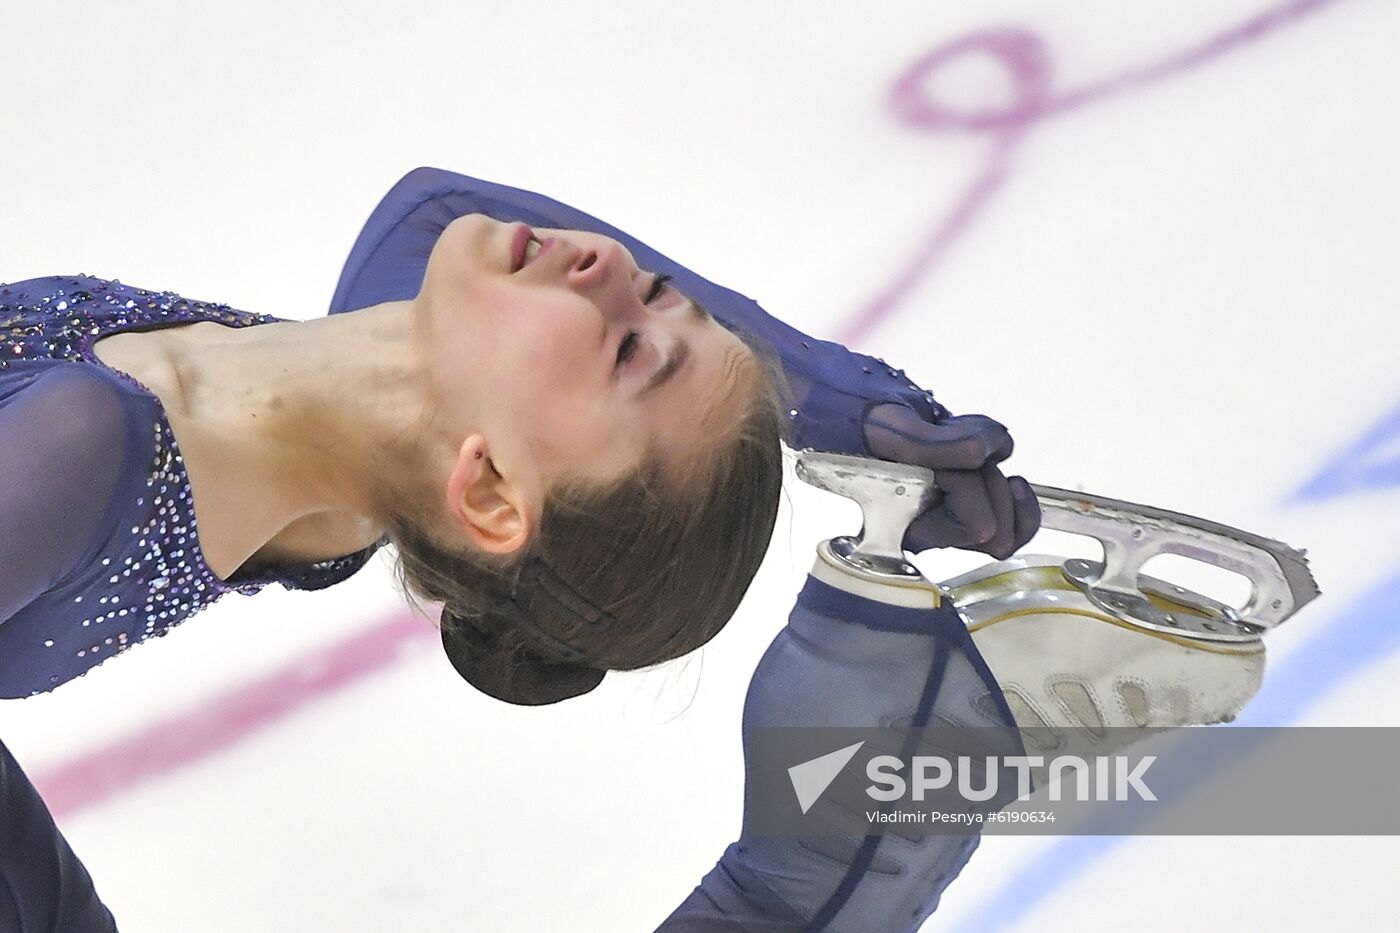 Estonia Figure Skating Worlds Junior Ladies